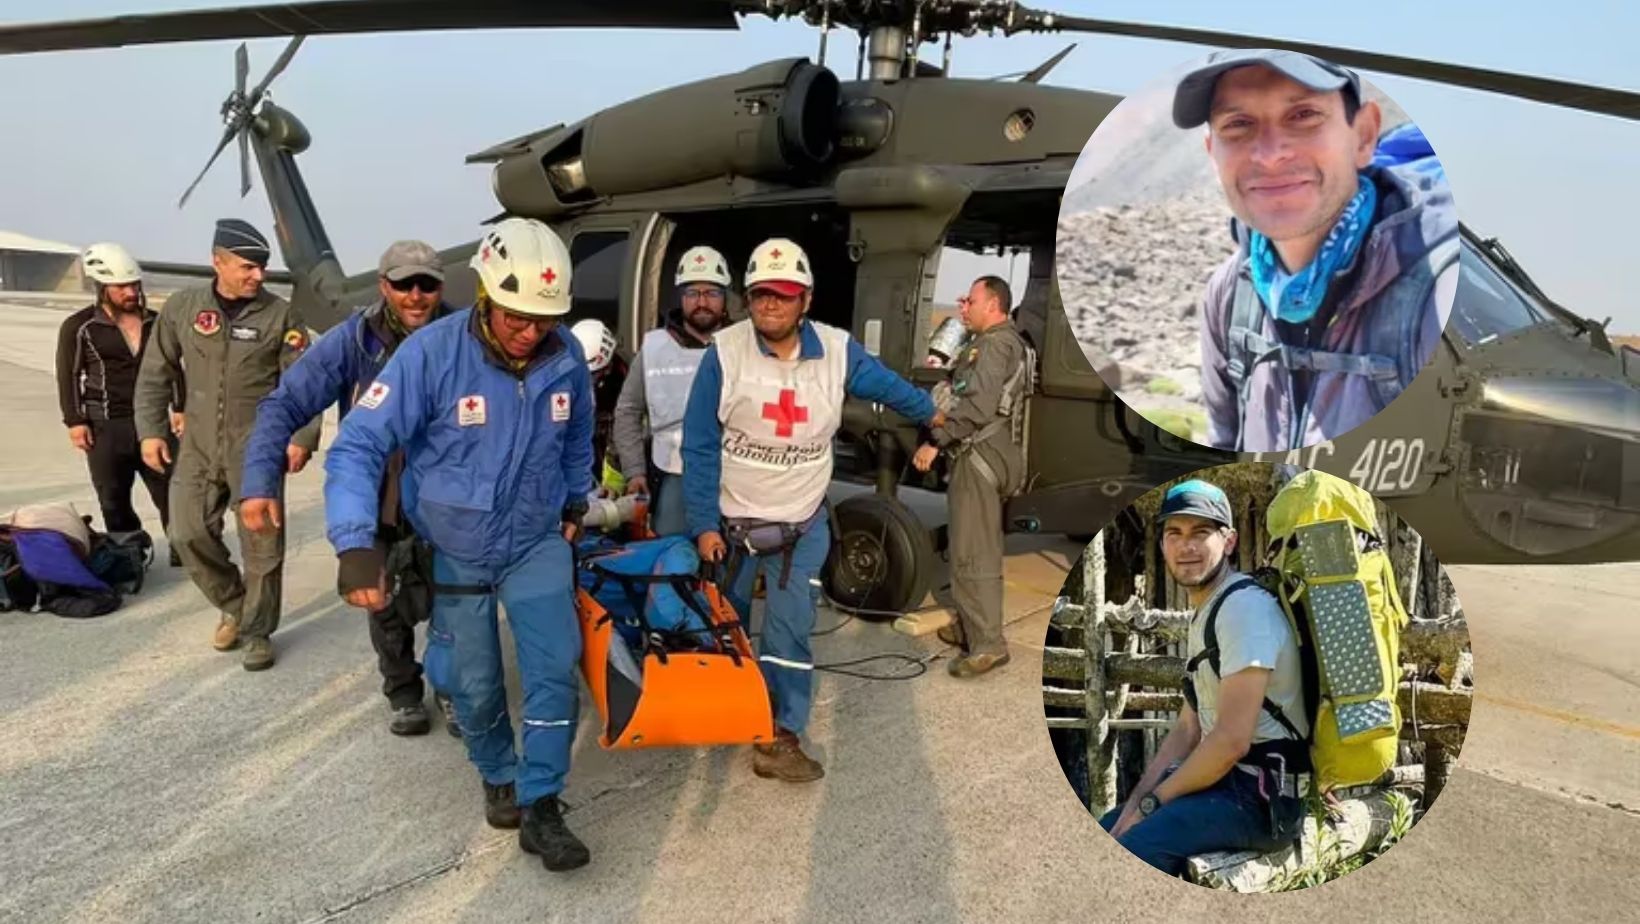 Parapentistas accidentados la Sierra Nevada de Santa Marta fueron rescatados